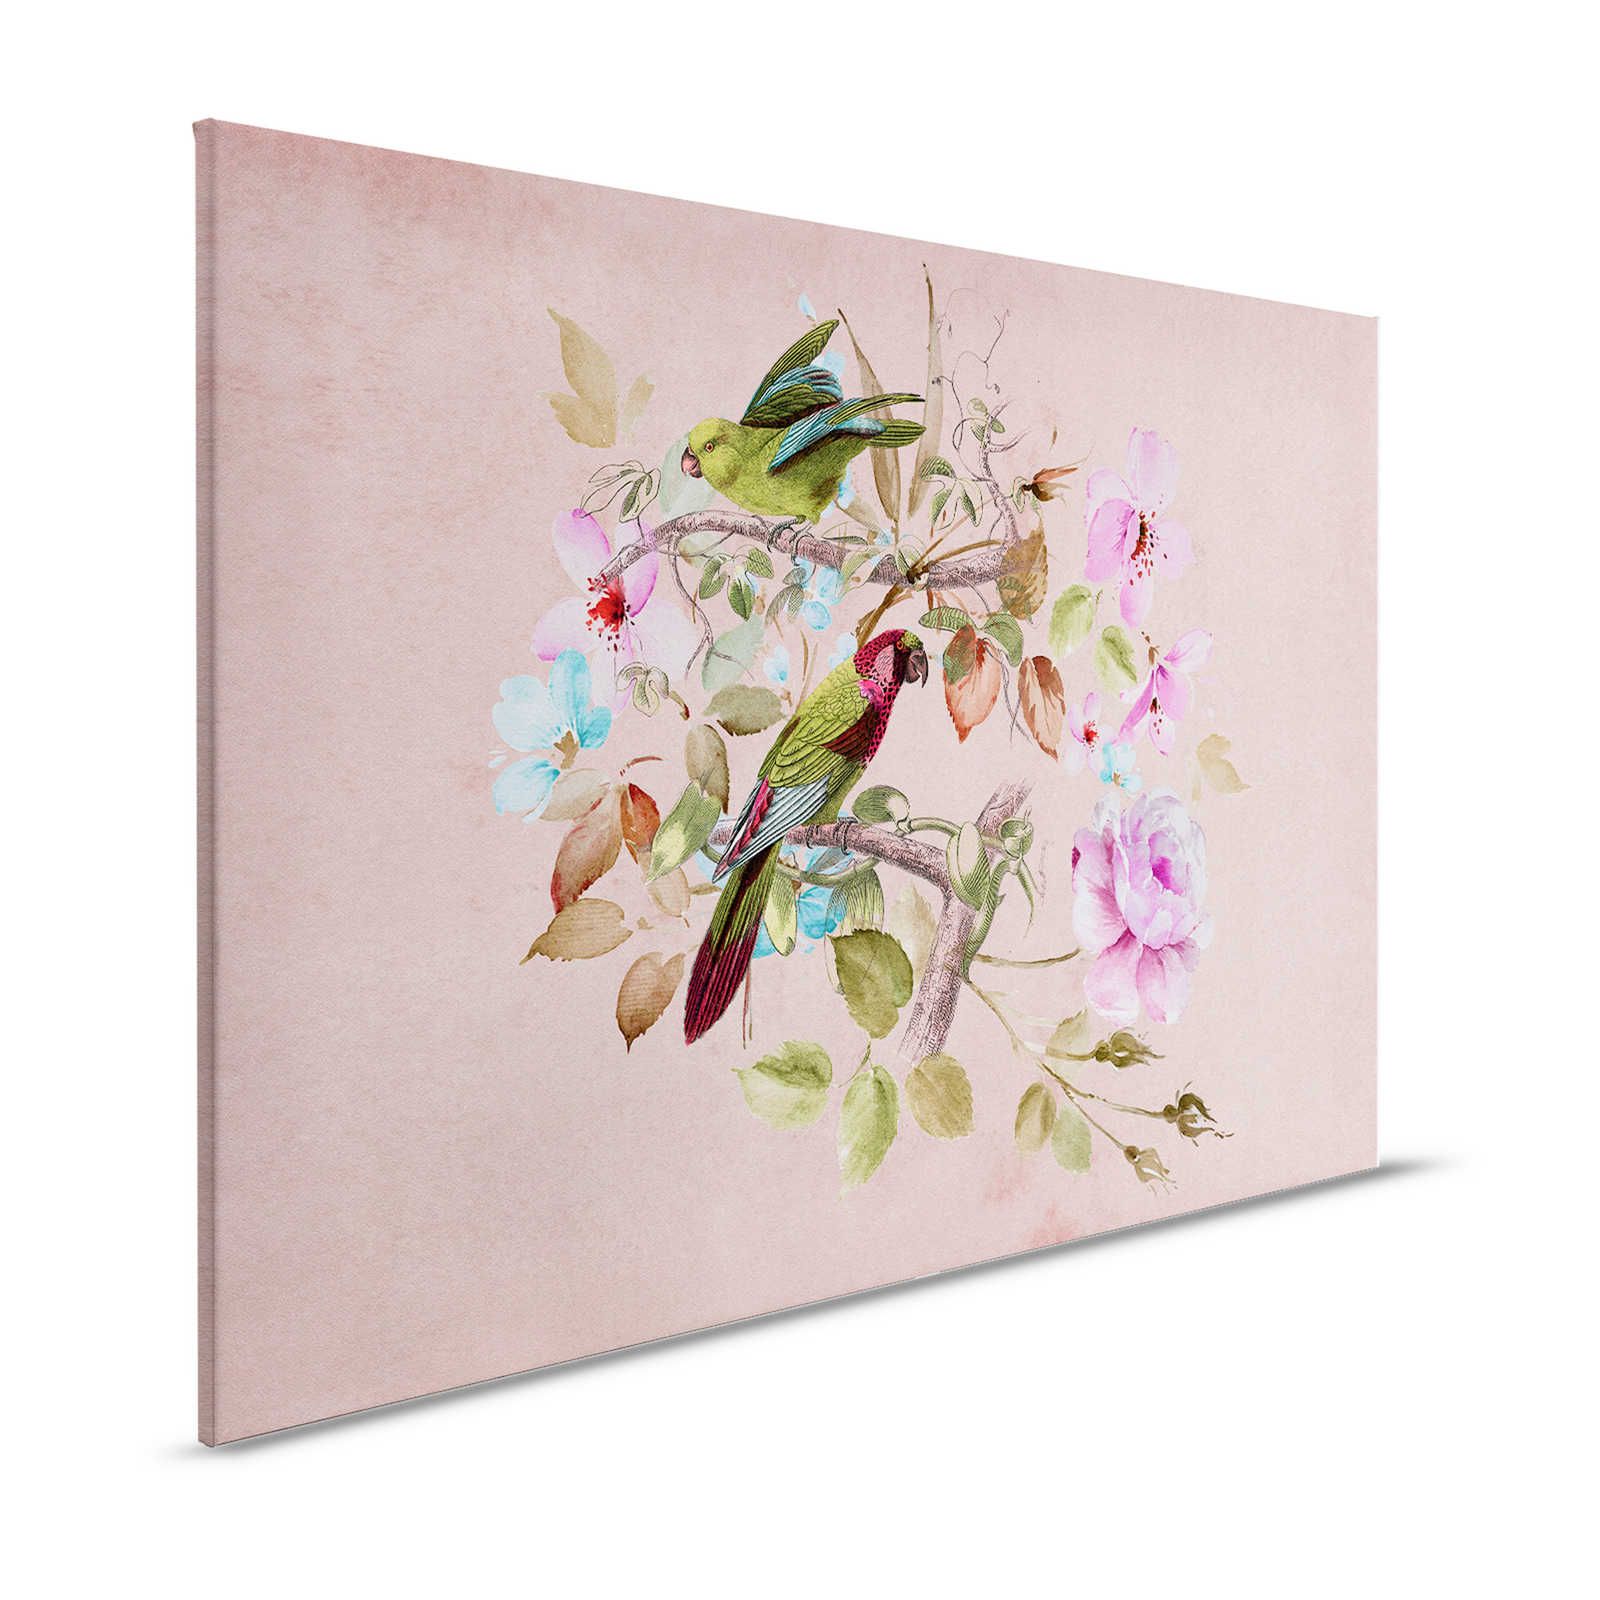 Nido d'amore 2 - Quadro su tela vintage con fiori e uccelli colorati - 1,20 m x 0,80 m
